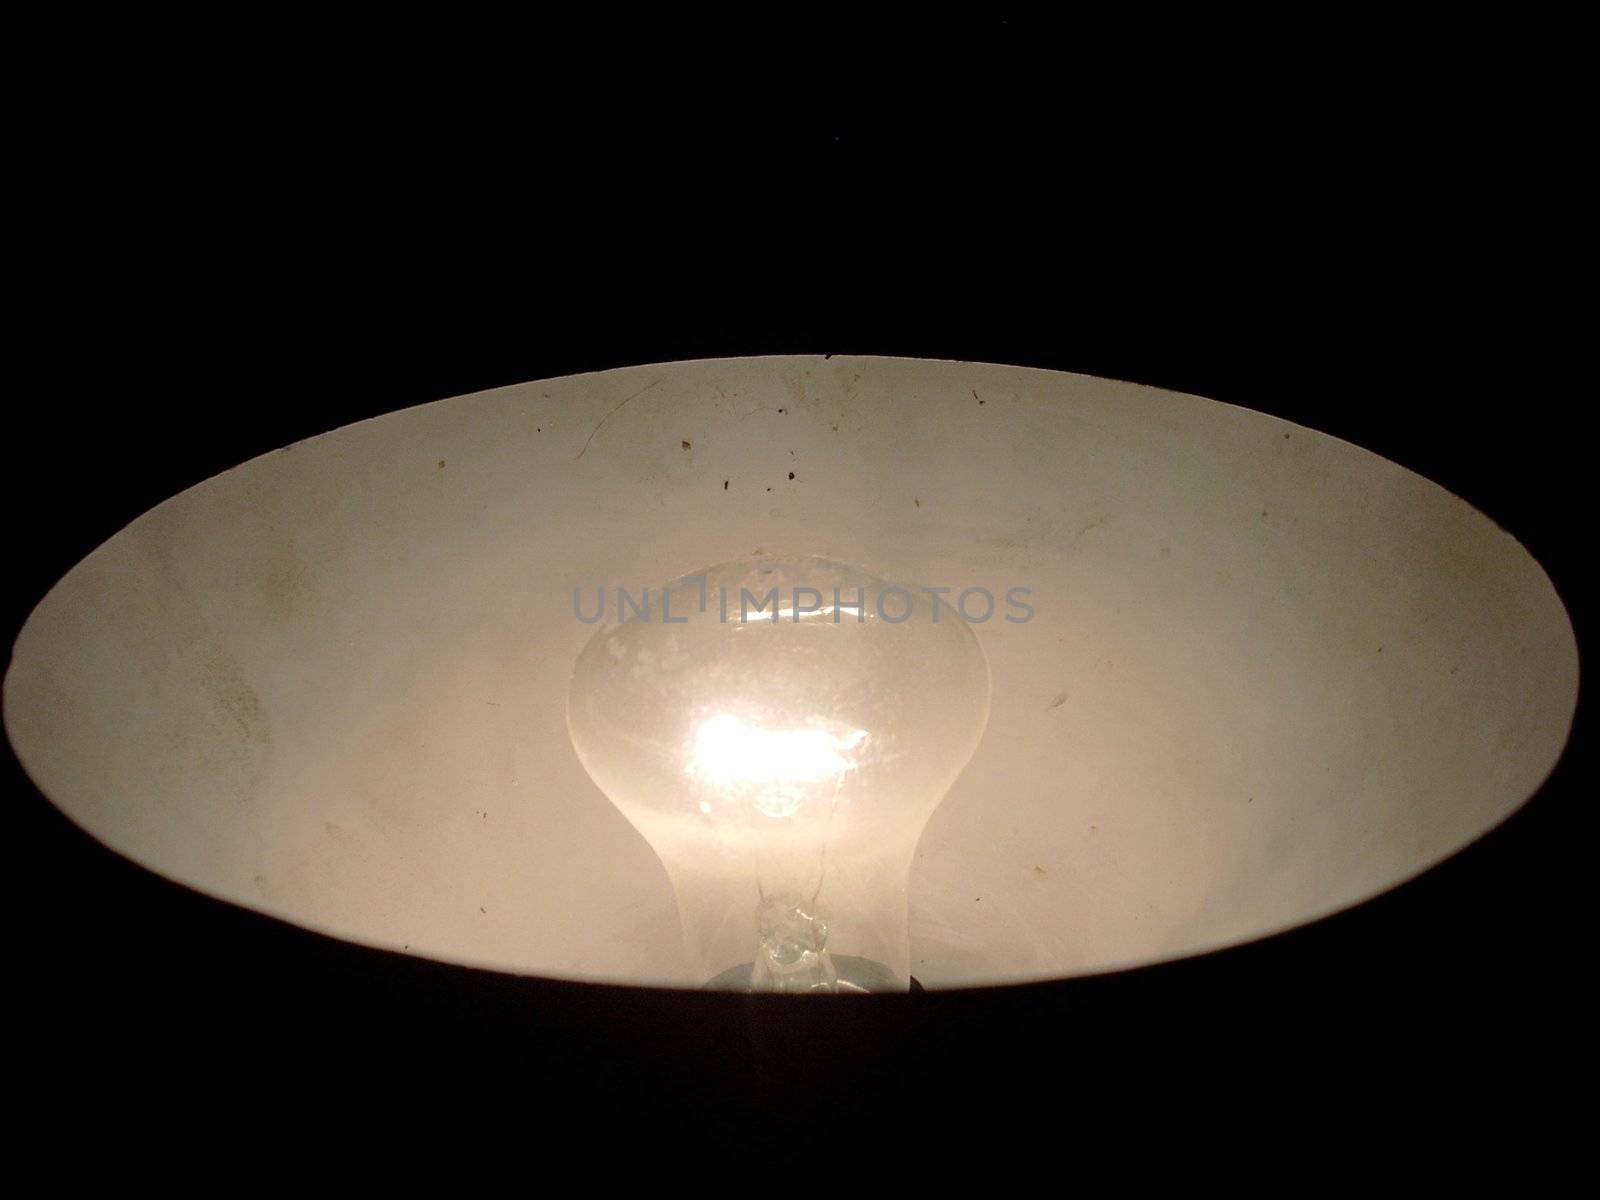 A photograph of lightening filament lamp